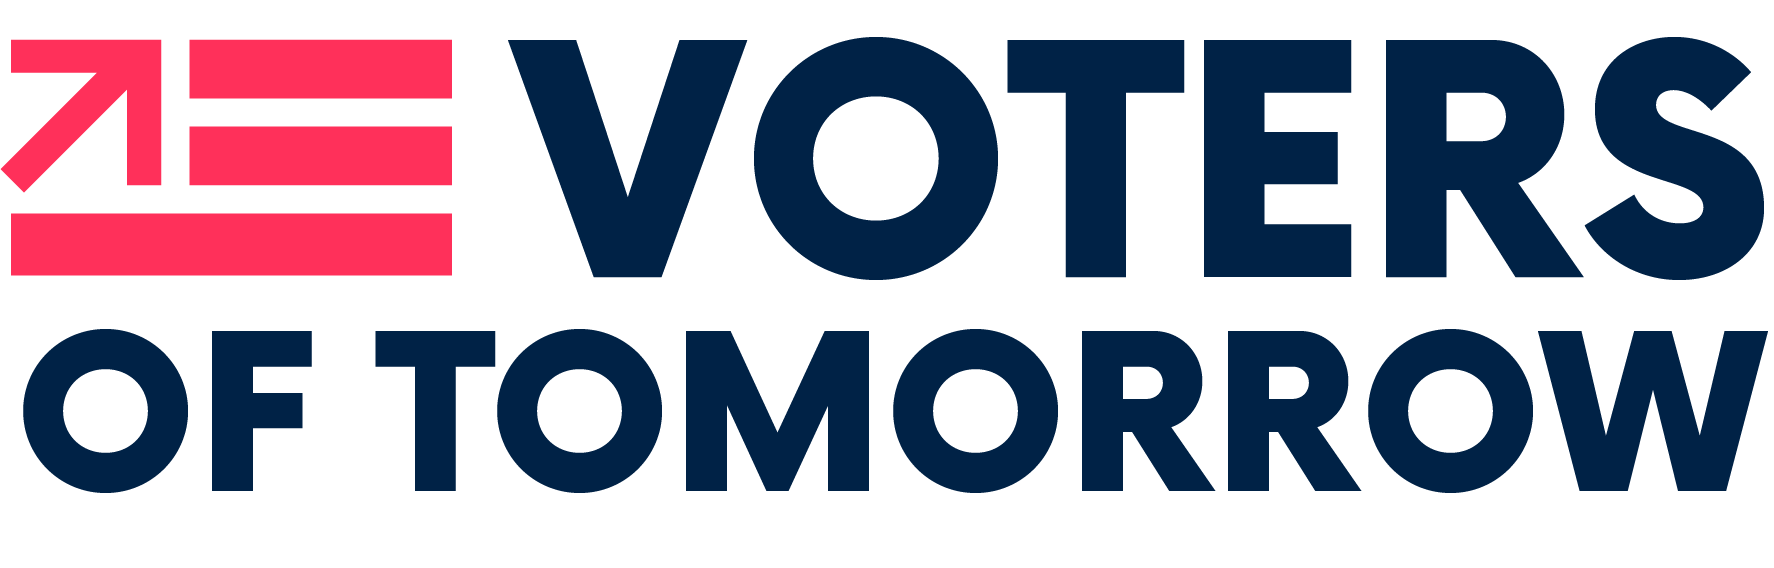 Voters of Tomorrow logo